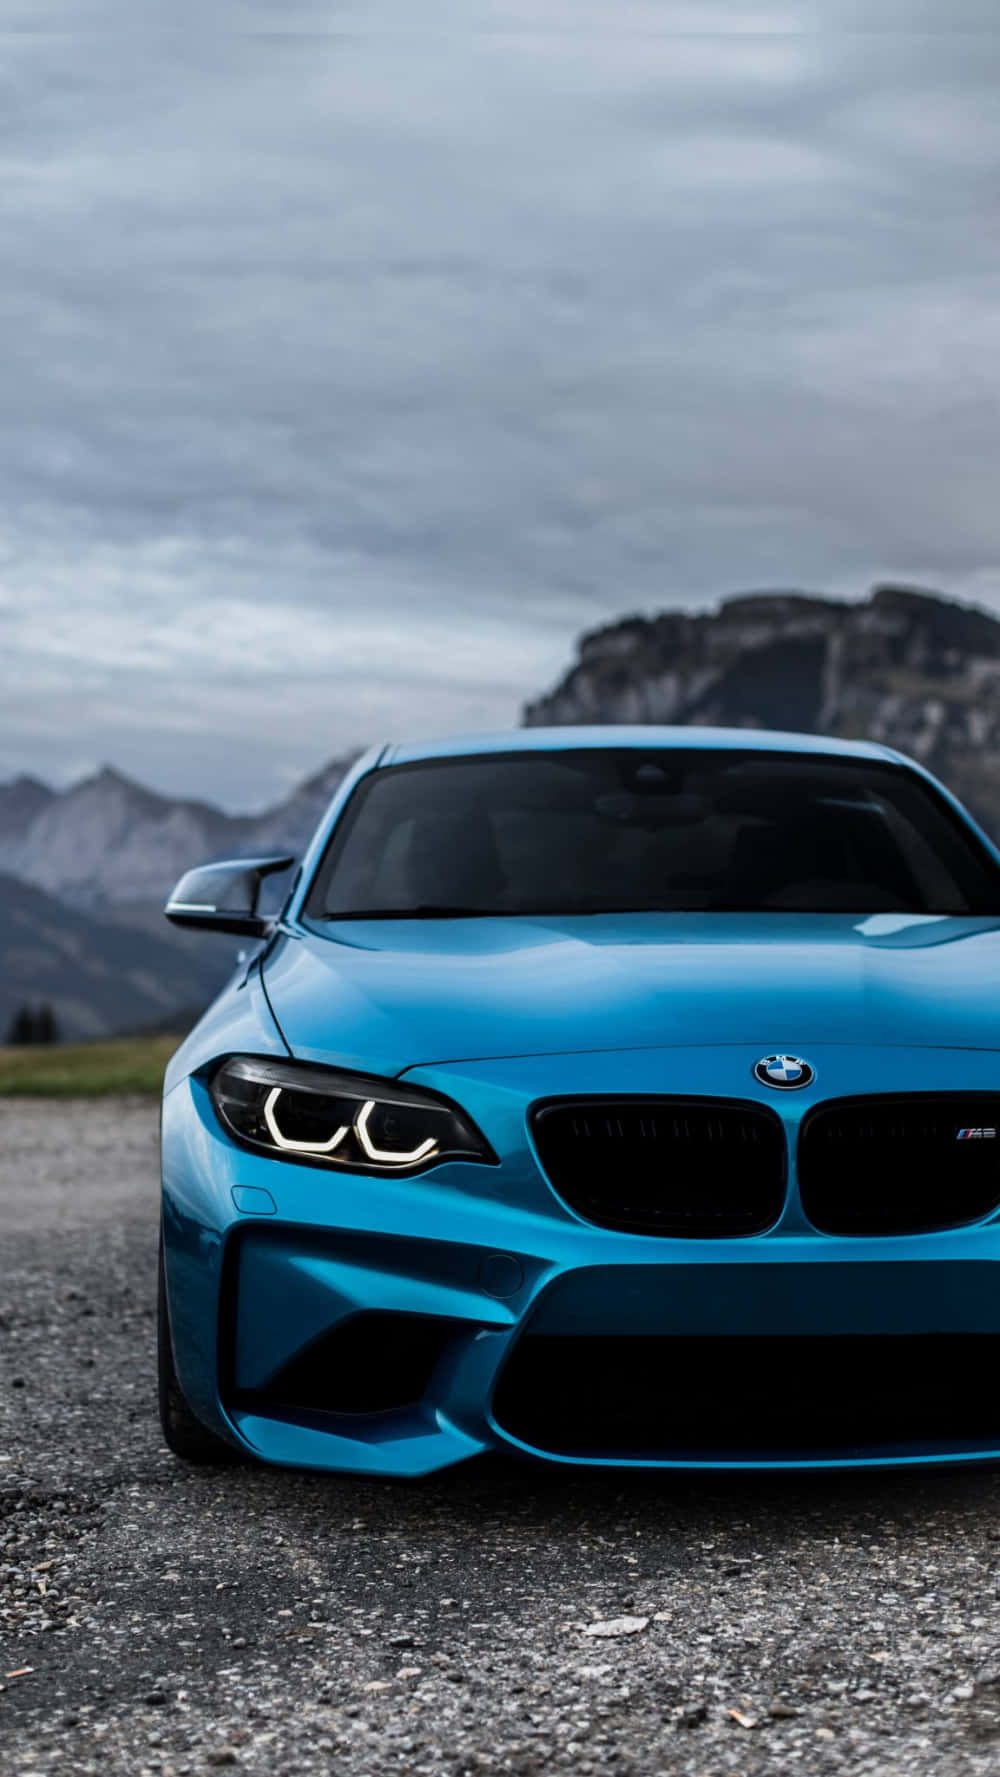 Nyd den sofistikerede og luksuriøse oplevelse med BMW gennem en stilfuld, moderne iphone baggrund. Wallpaper